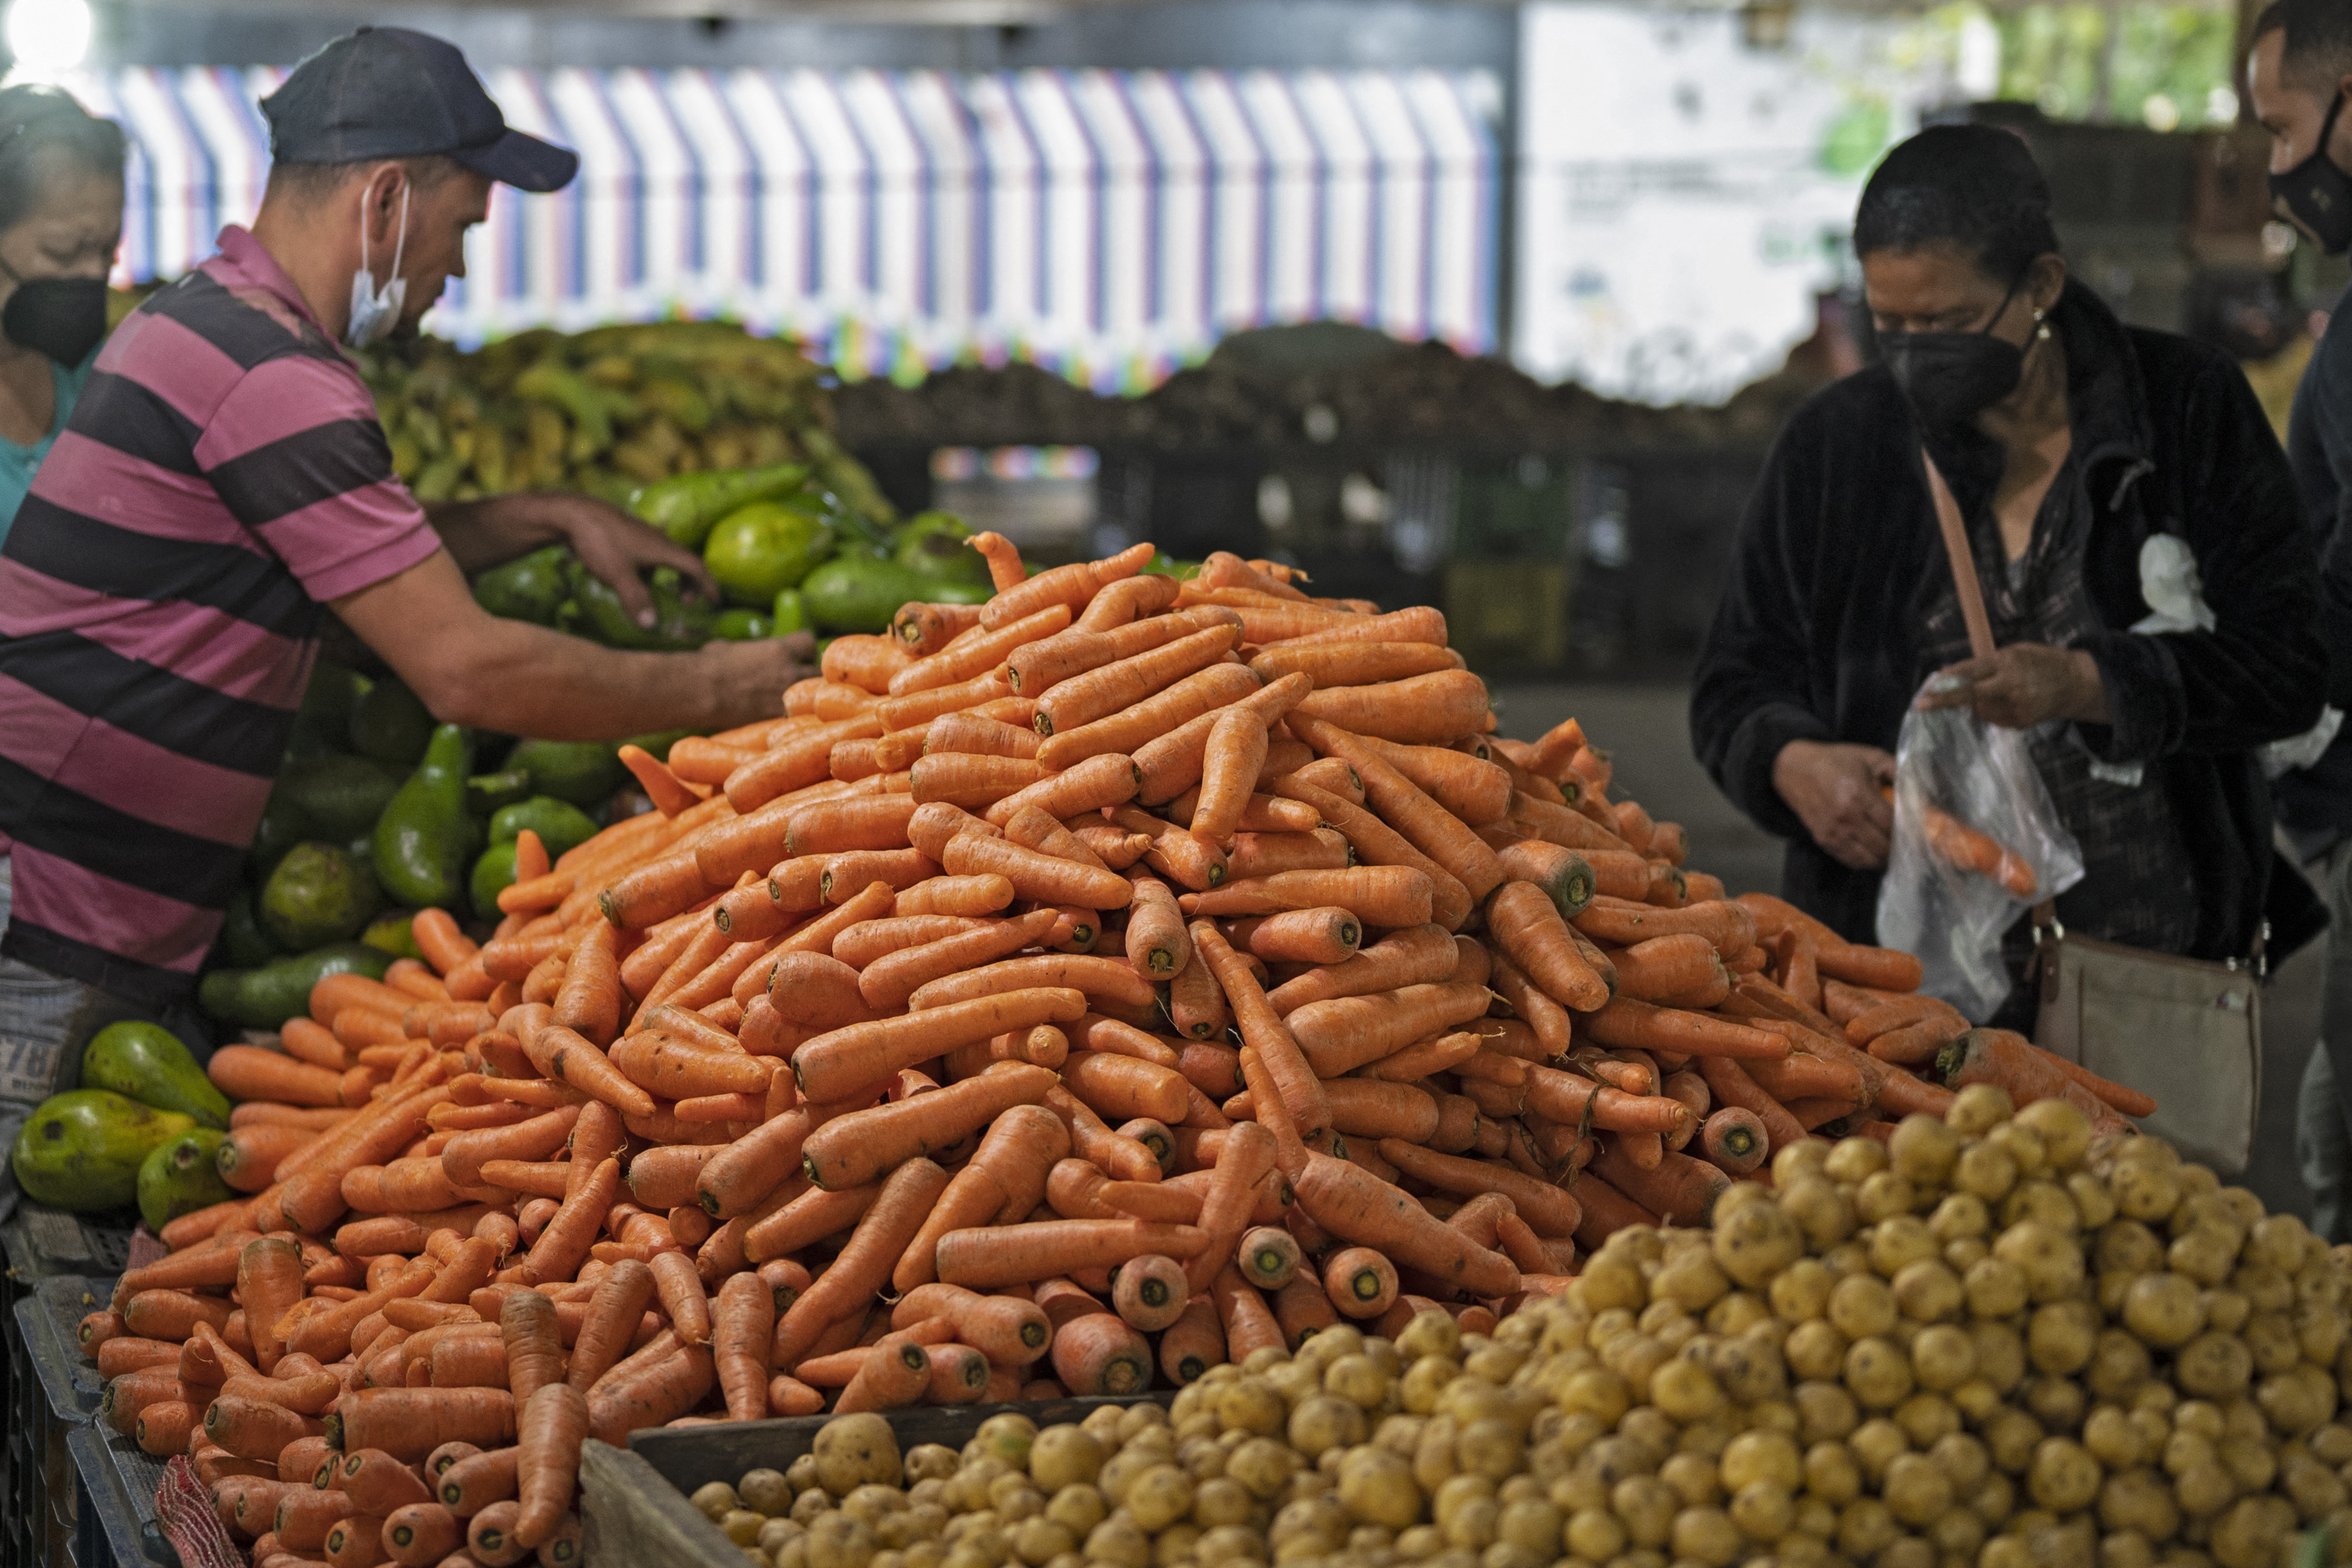 Fedeagro: Hortalizas se pudren en los supermercados por el bajo consumo